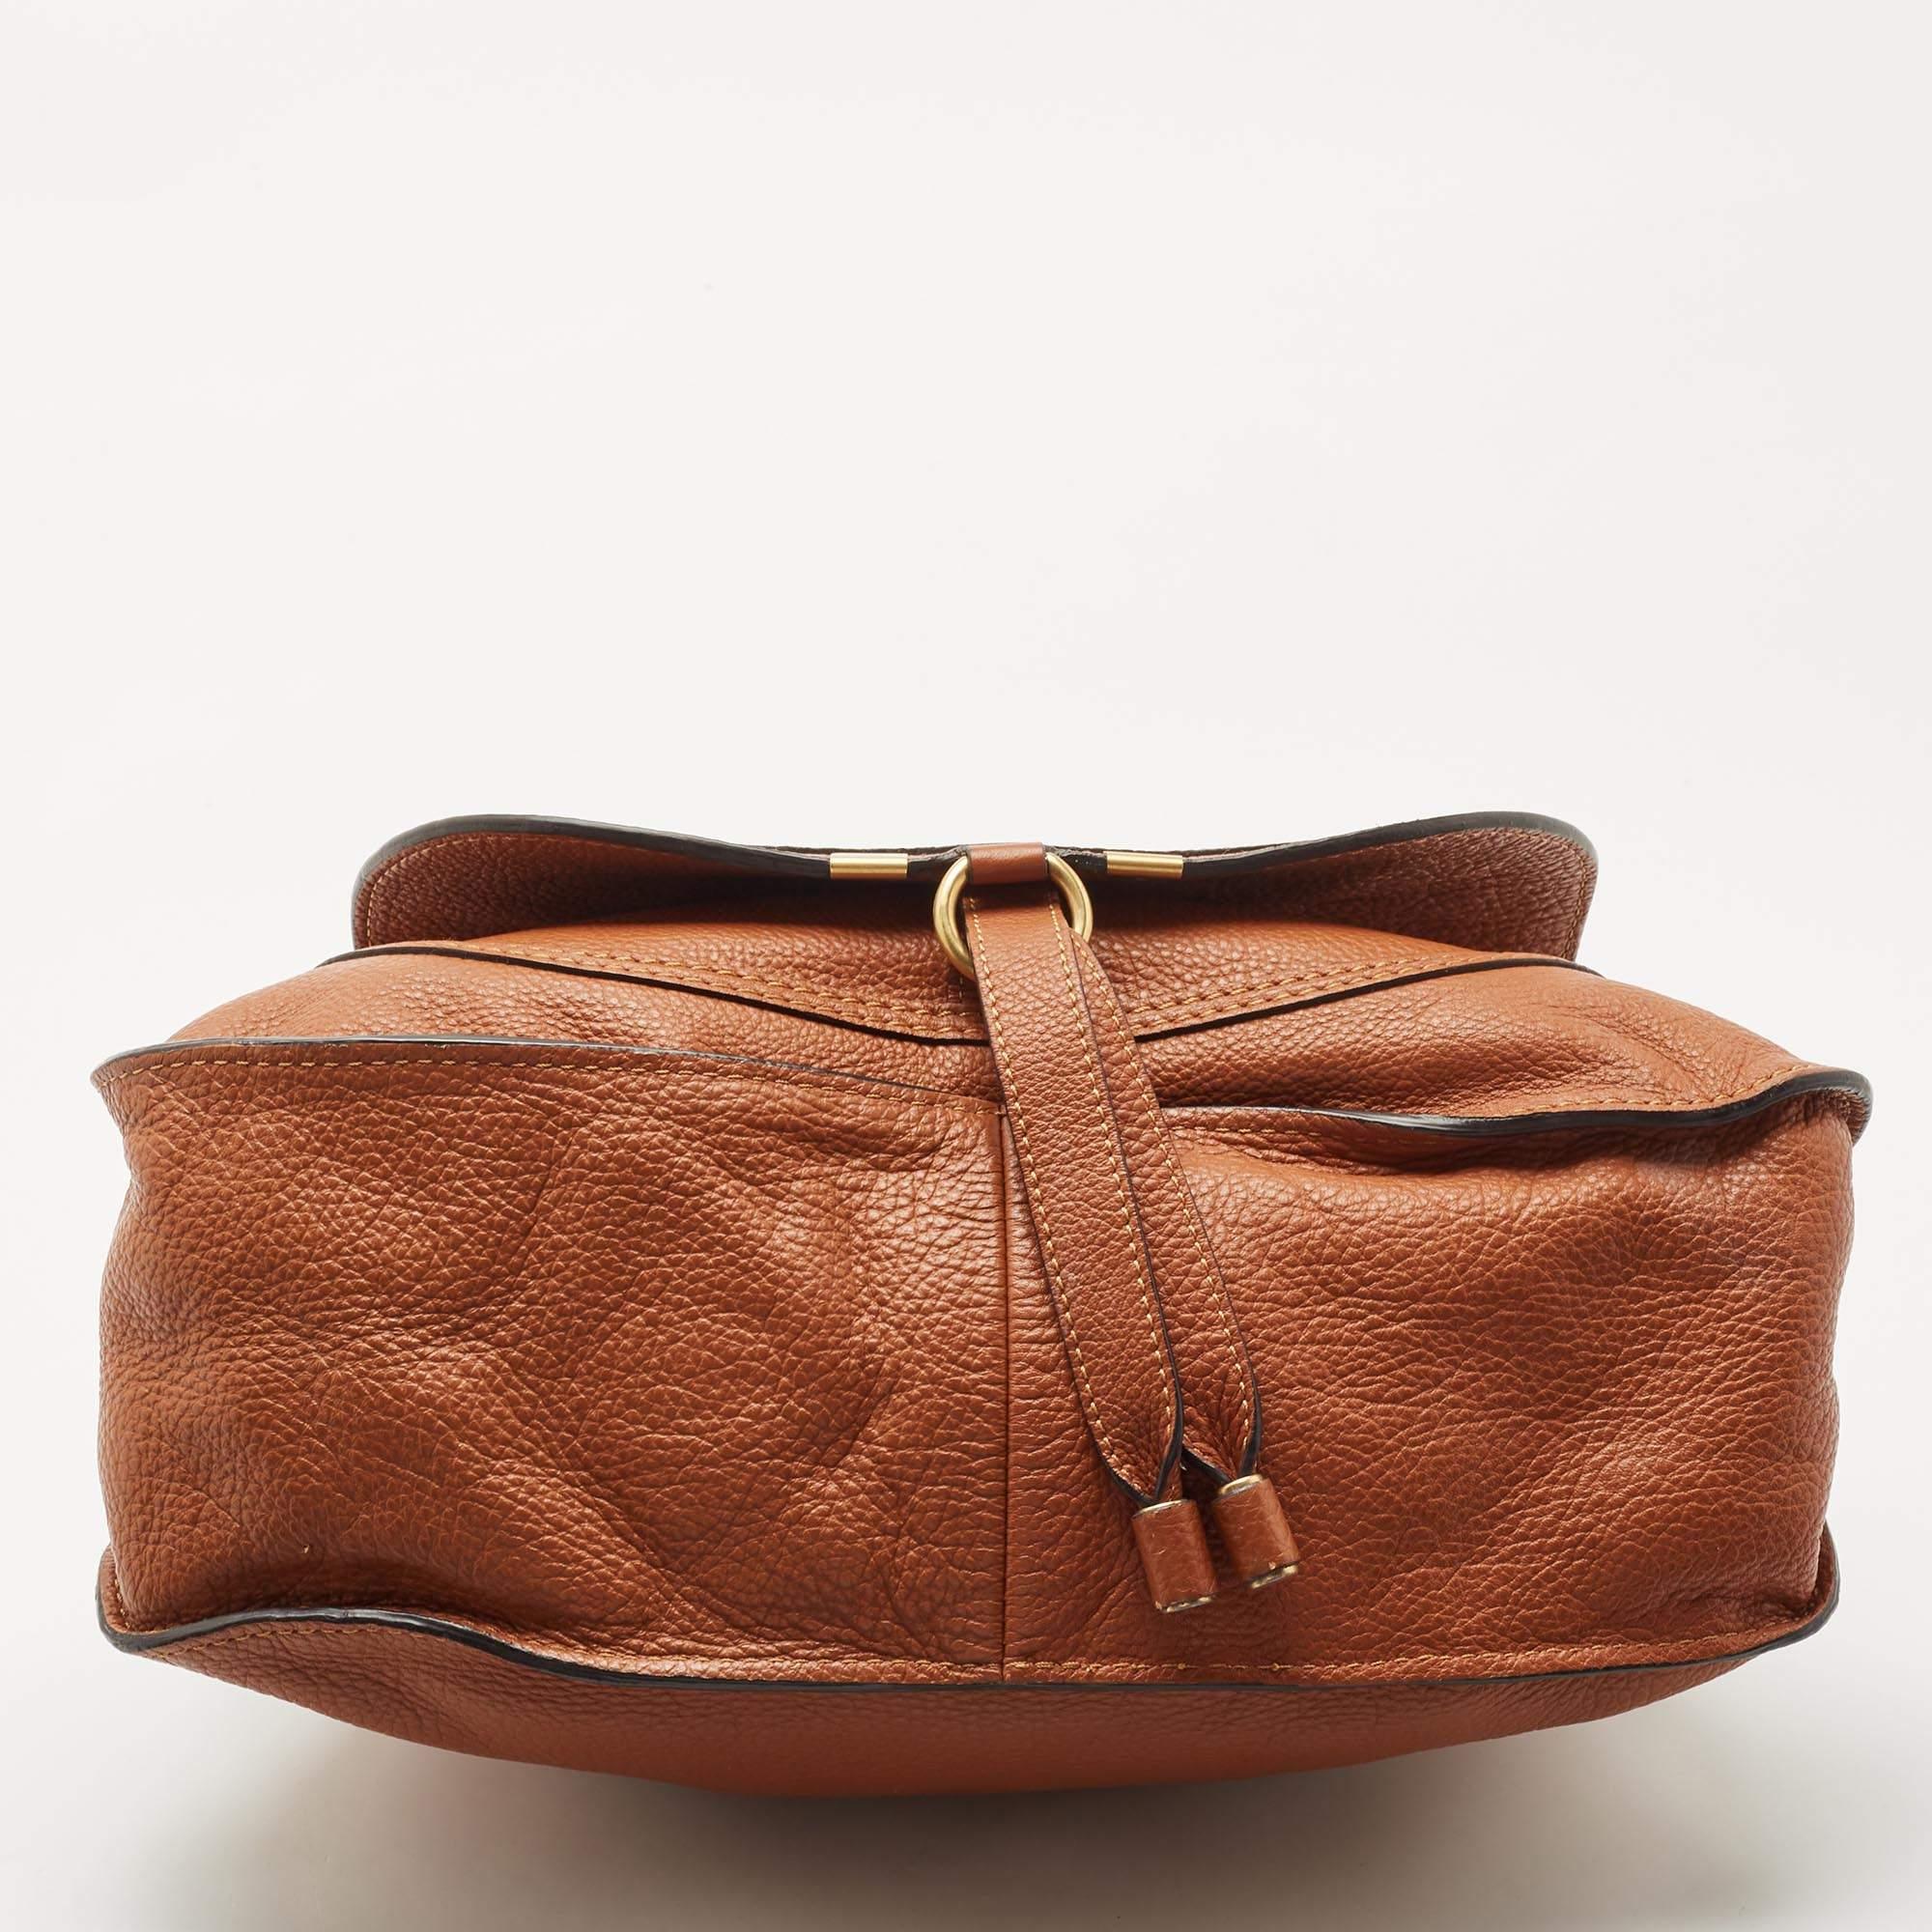 Chloe Brown Leather Medium Marcie Top Handle Bag 1